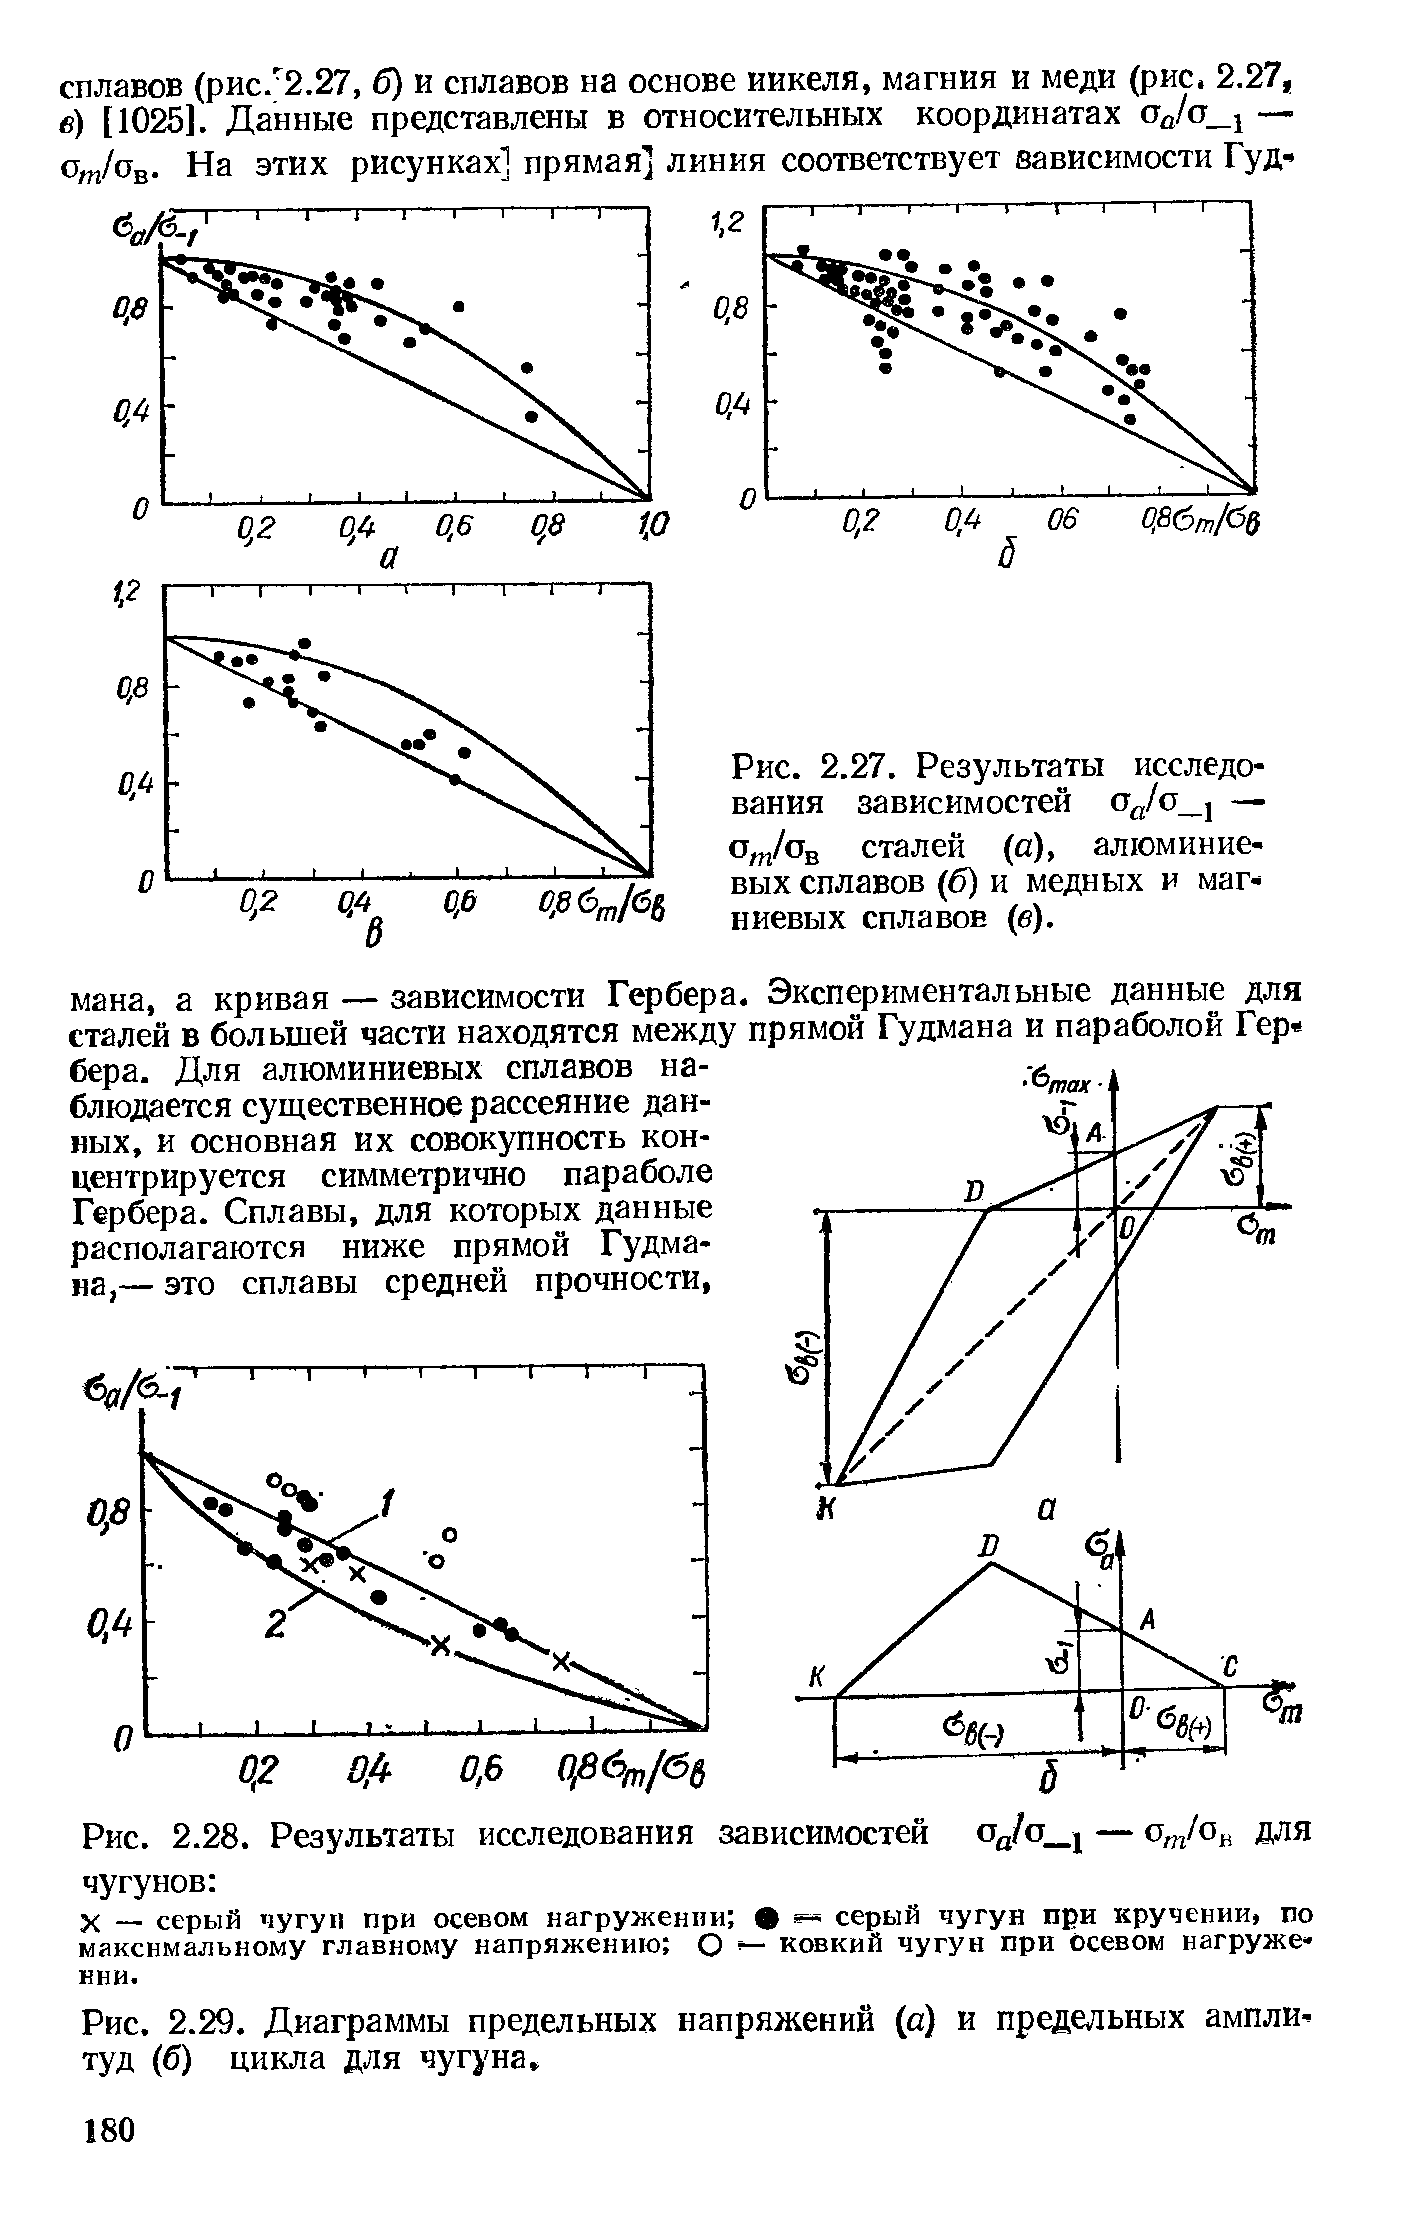 Рис. 2.29. <a href="/info/23903">Диаграммы предельных напряжений</a> (а) и предельных амплитуд (б) цикла для чугуна.
